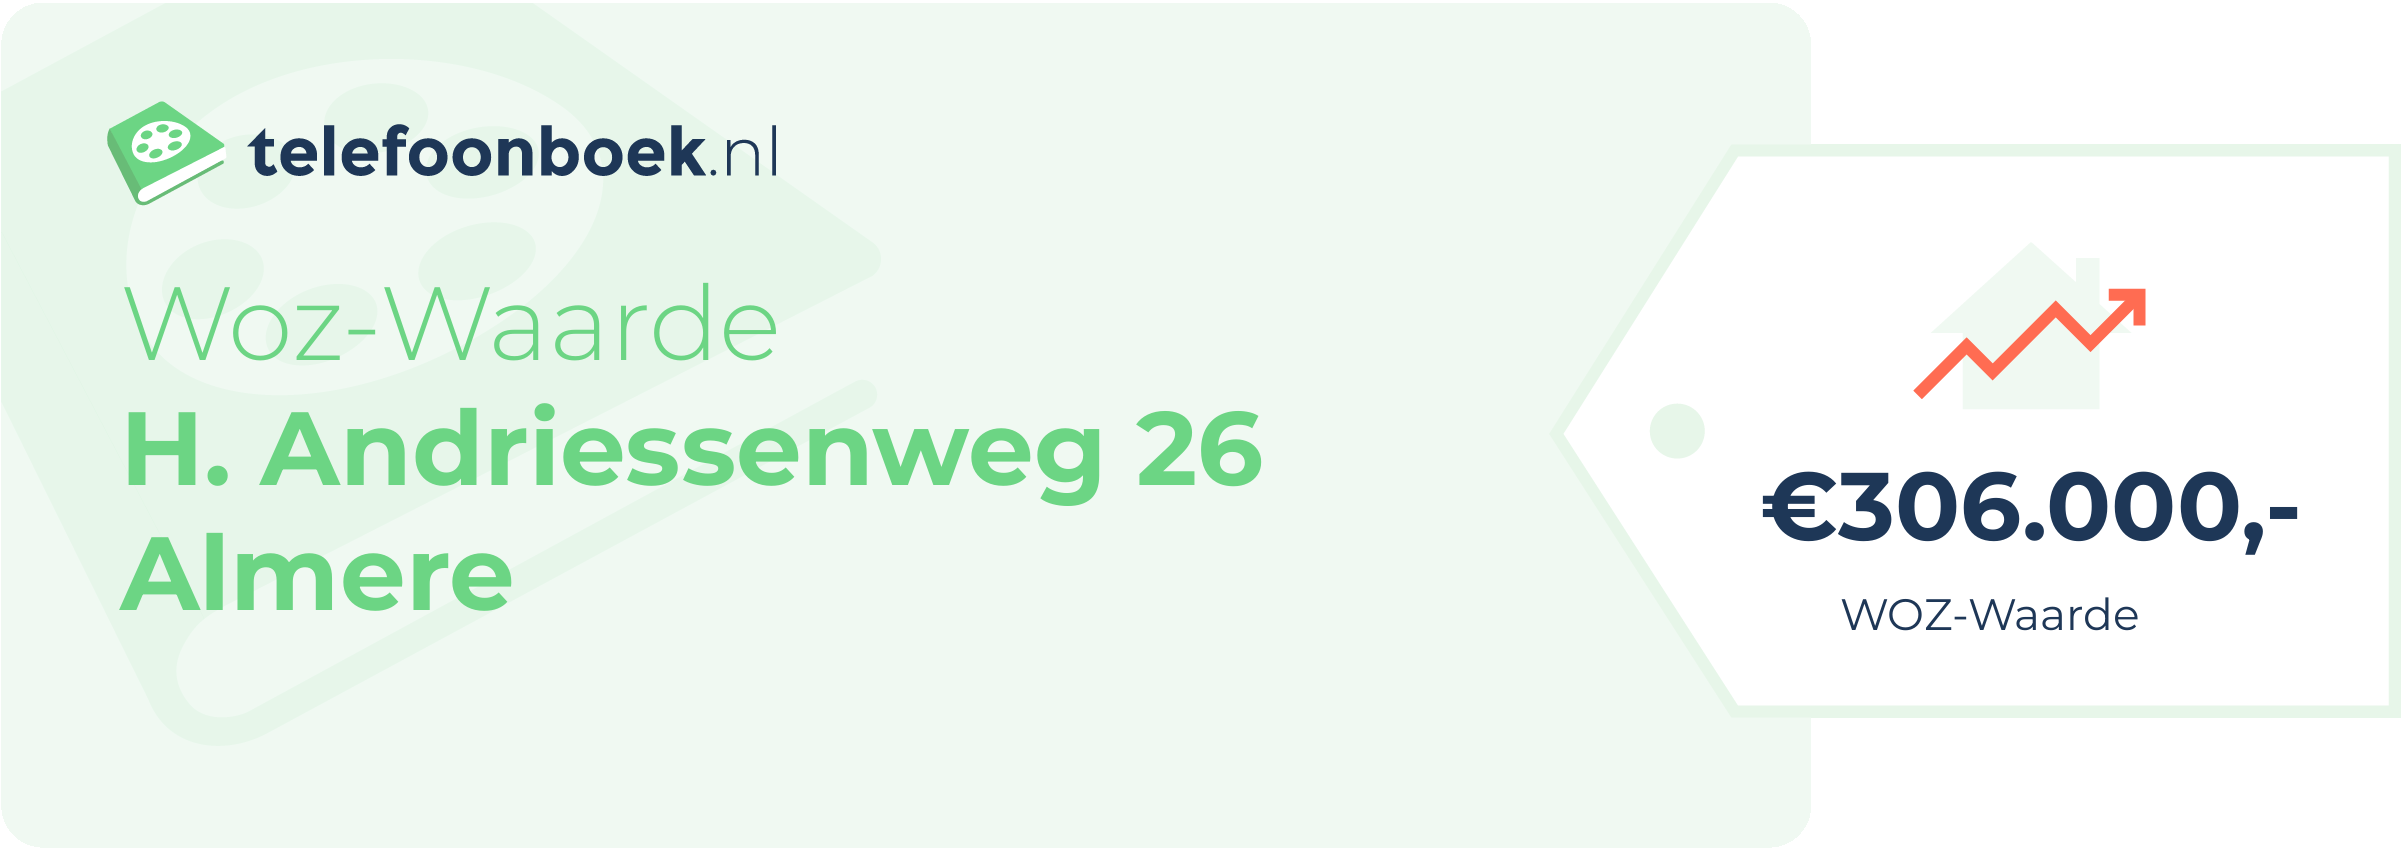 WOZ-waarde H. Andriessenweg 26 Almere